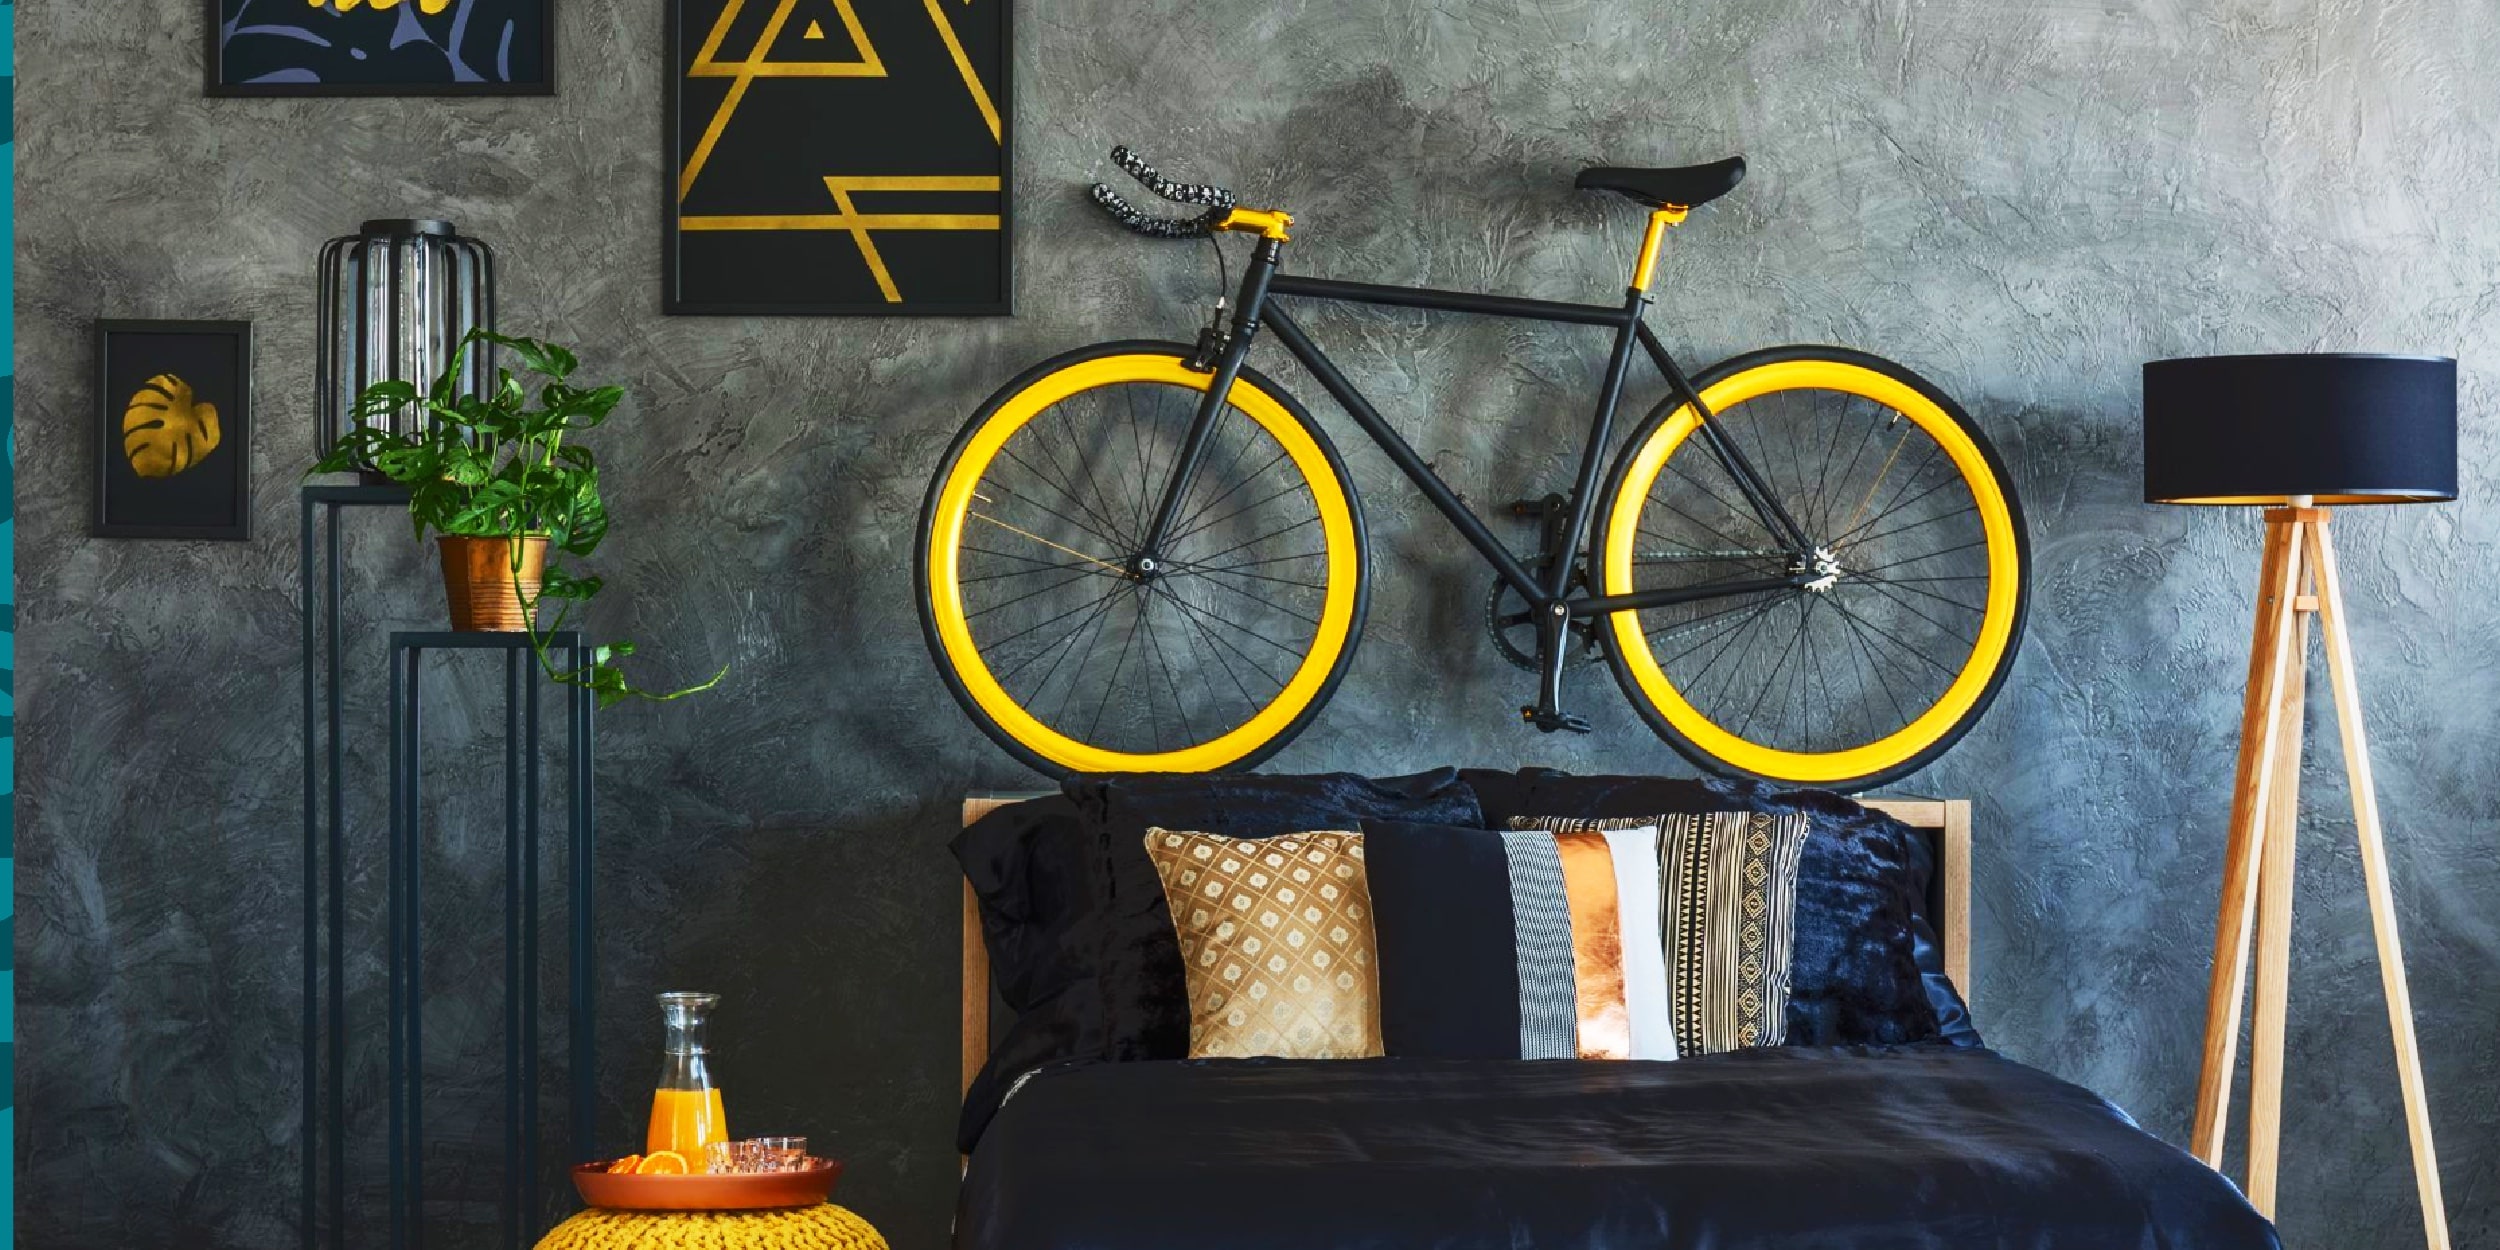 Спорт и жизнь: где хранить велосипед в маленькой квартире идеи для дома,интерьер и дизайн